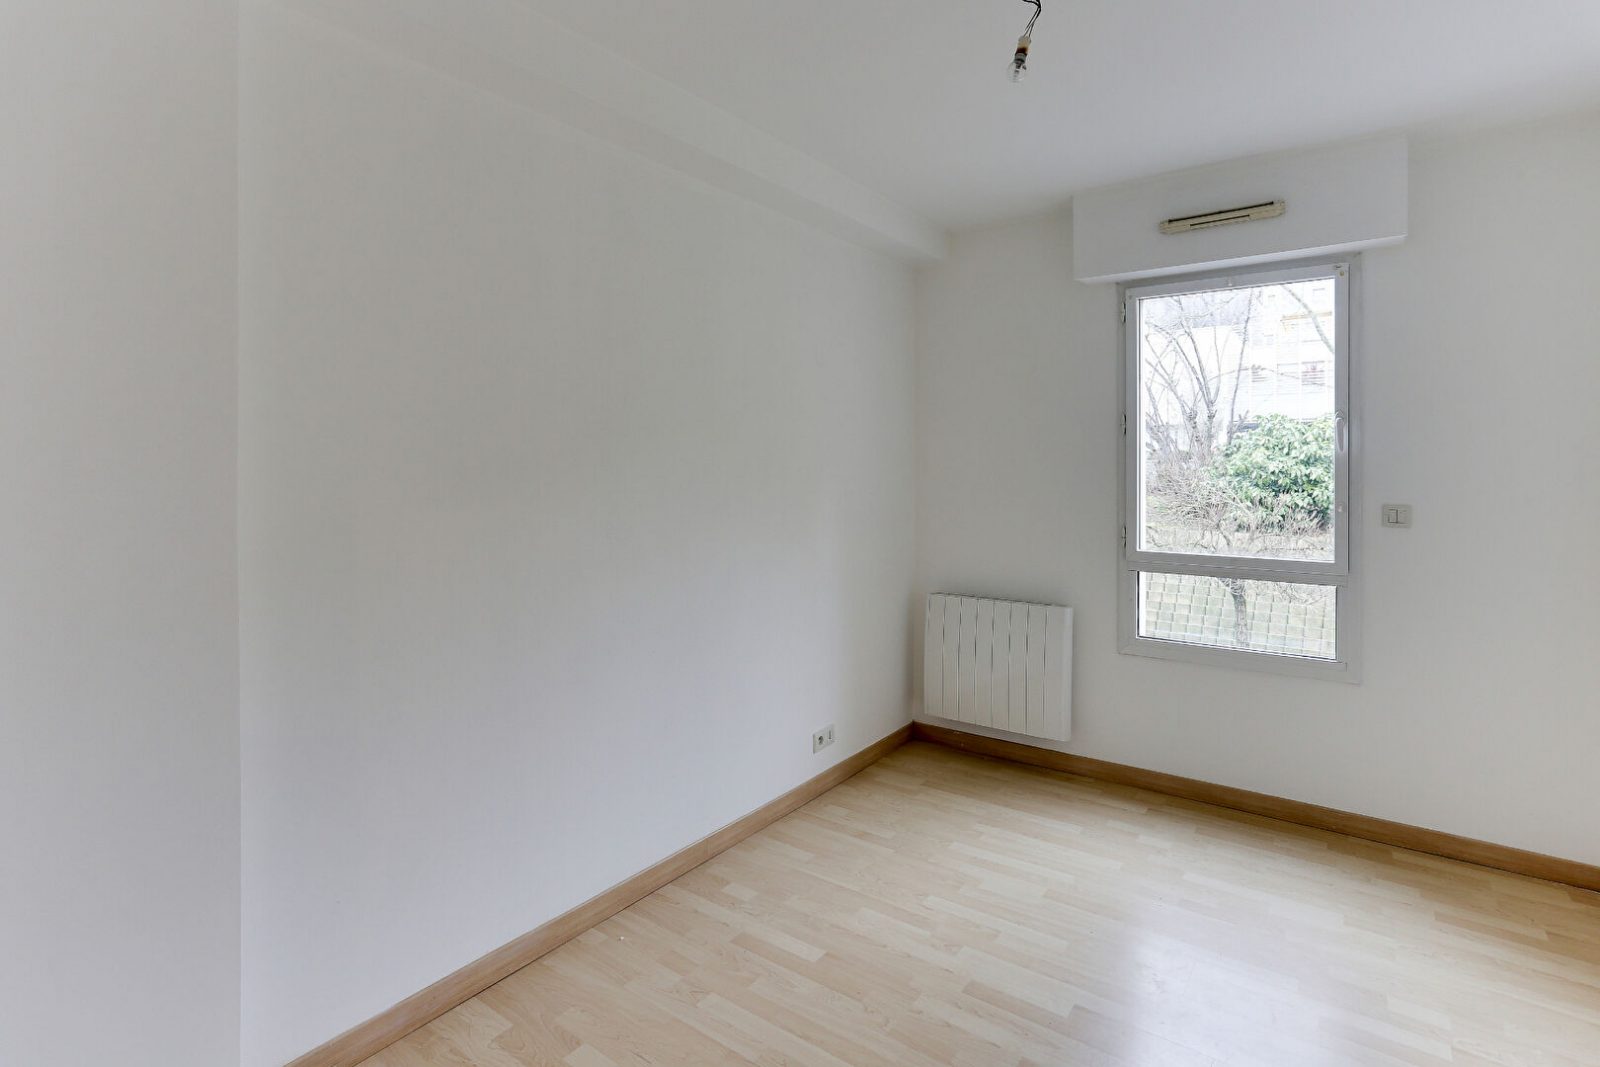 Appartement 5 pièces - 92 m² environ - 55078288i.jpg | Kermarrec Habitation